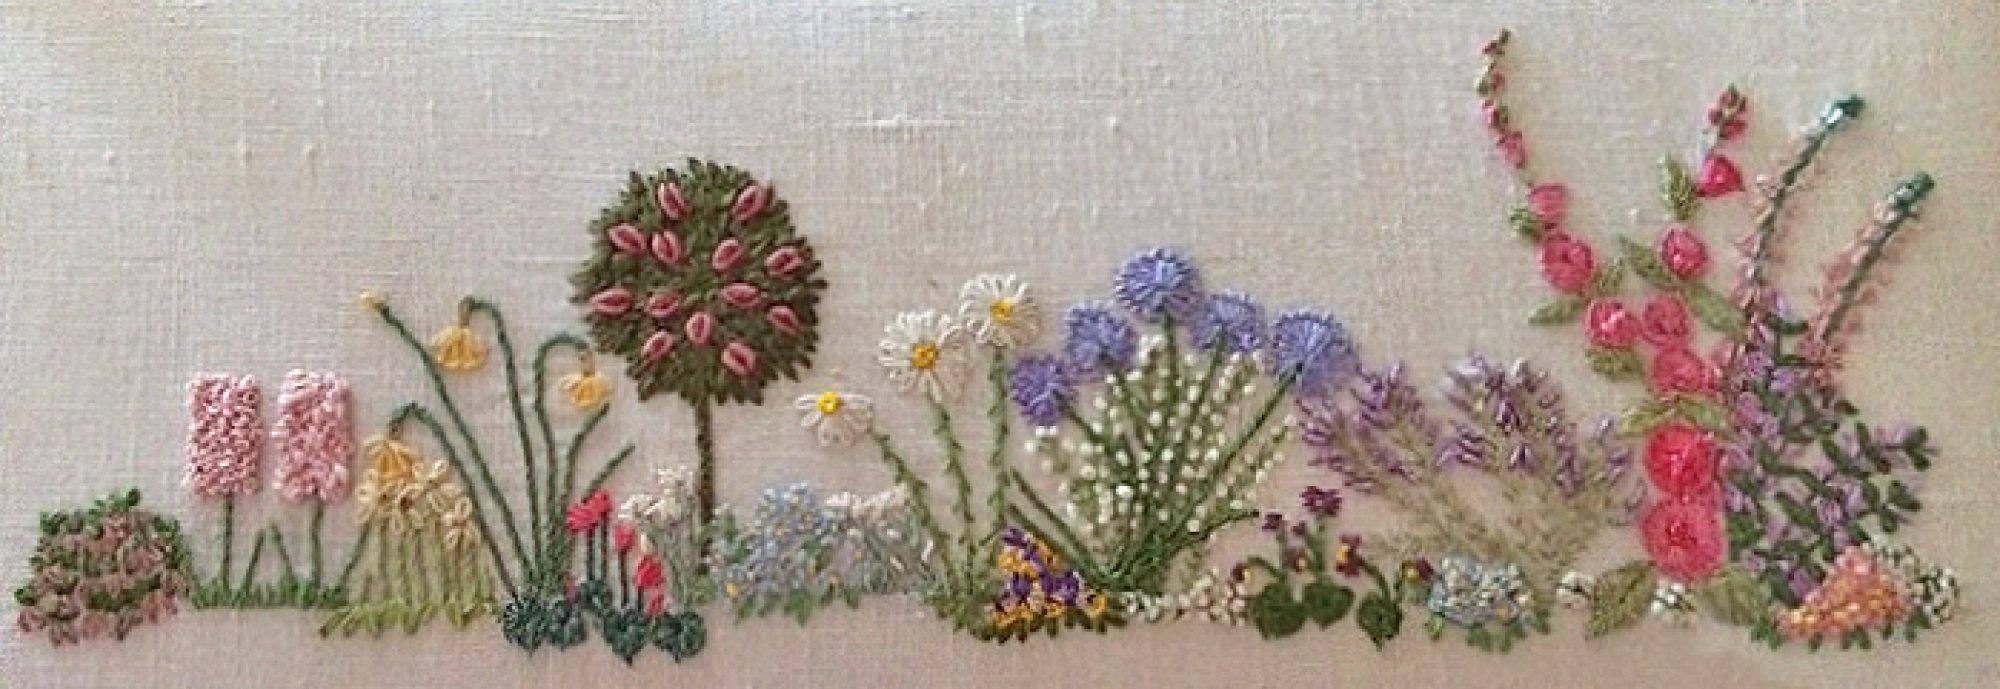 embroidery garden